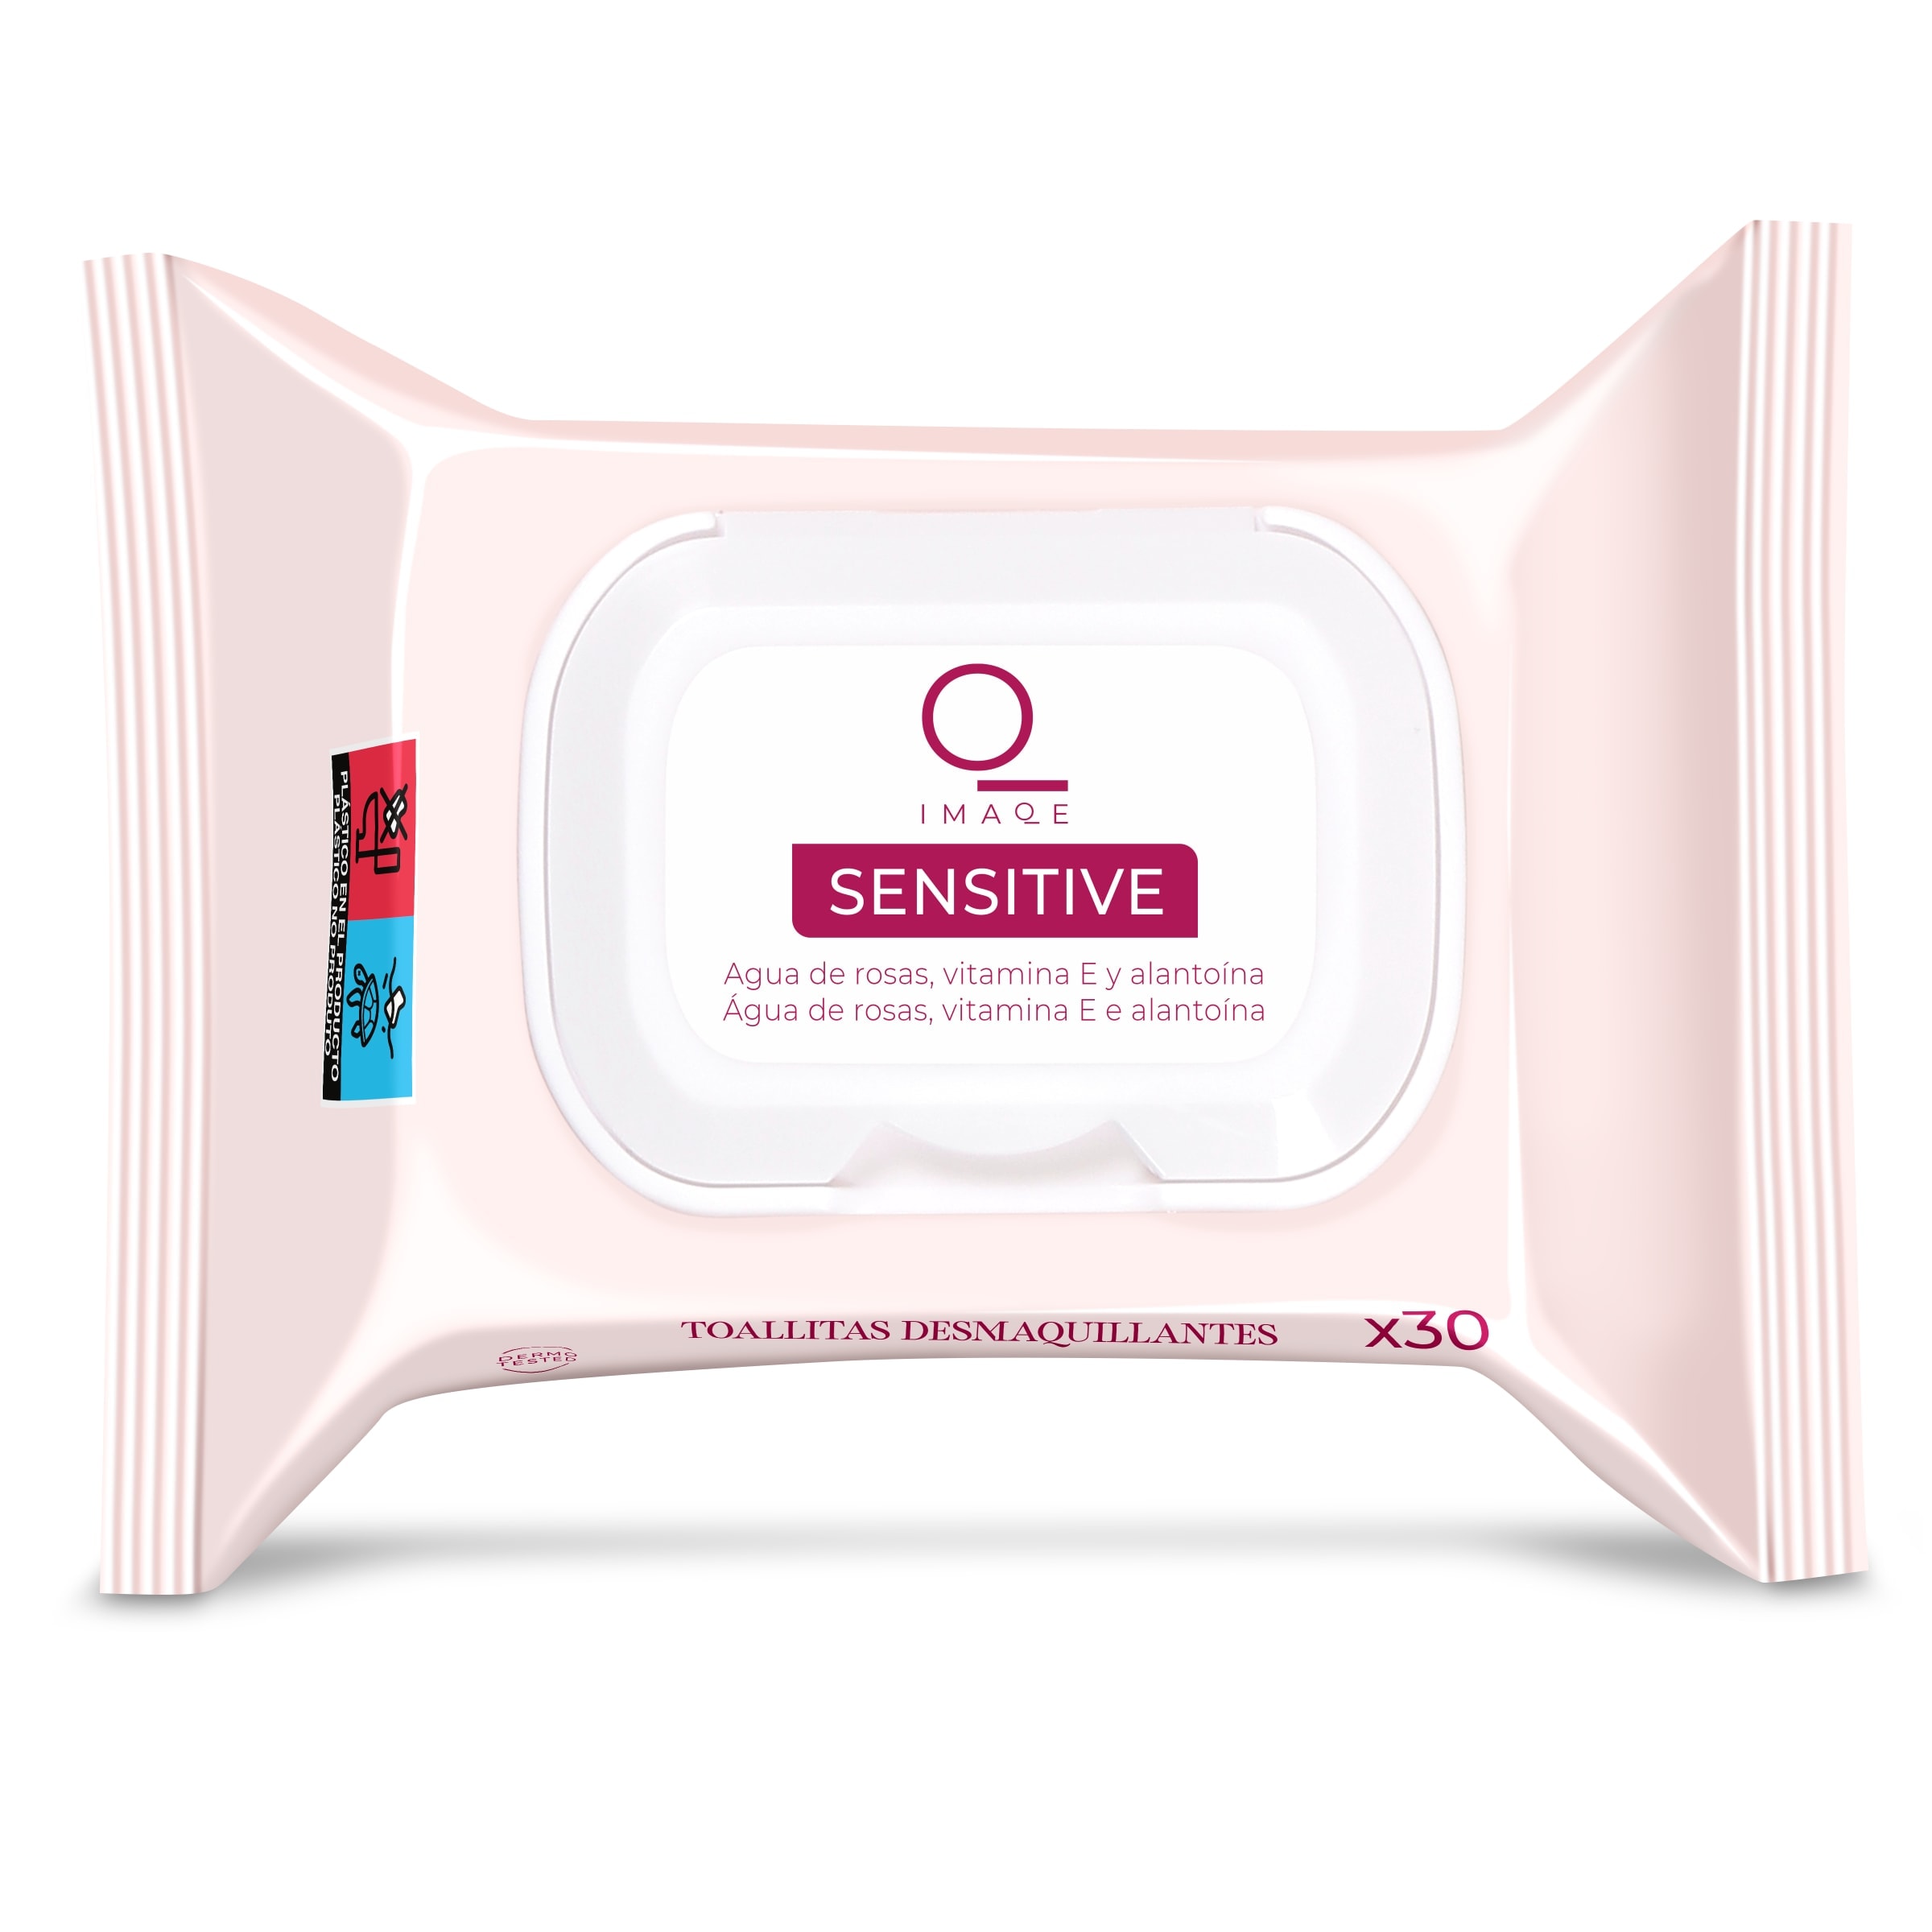 Toallitas desmaquillantes para pieles sensibles con extractos de rosas  Imaqe bolsa 30 unidades - Supermercados DIA